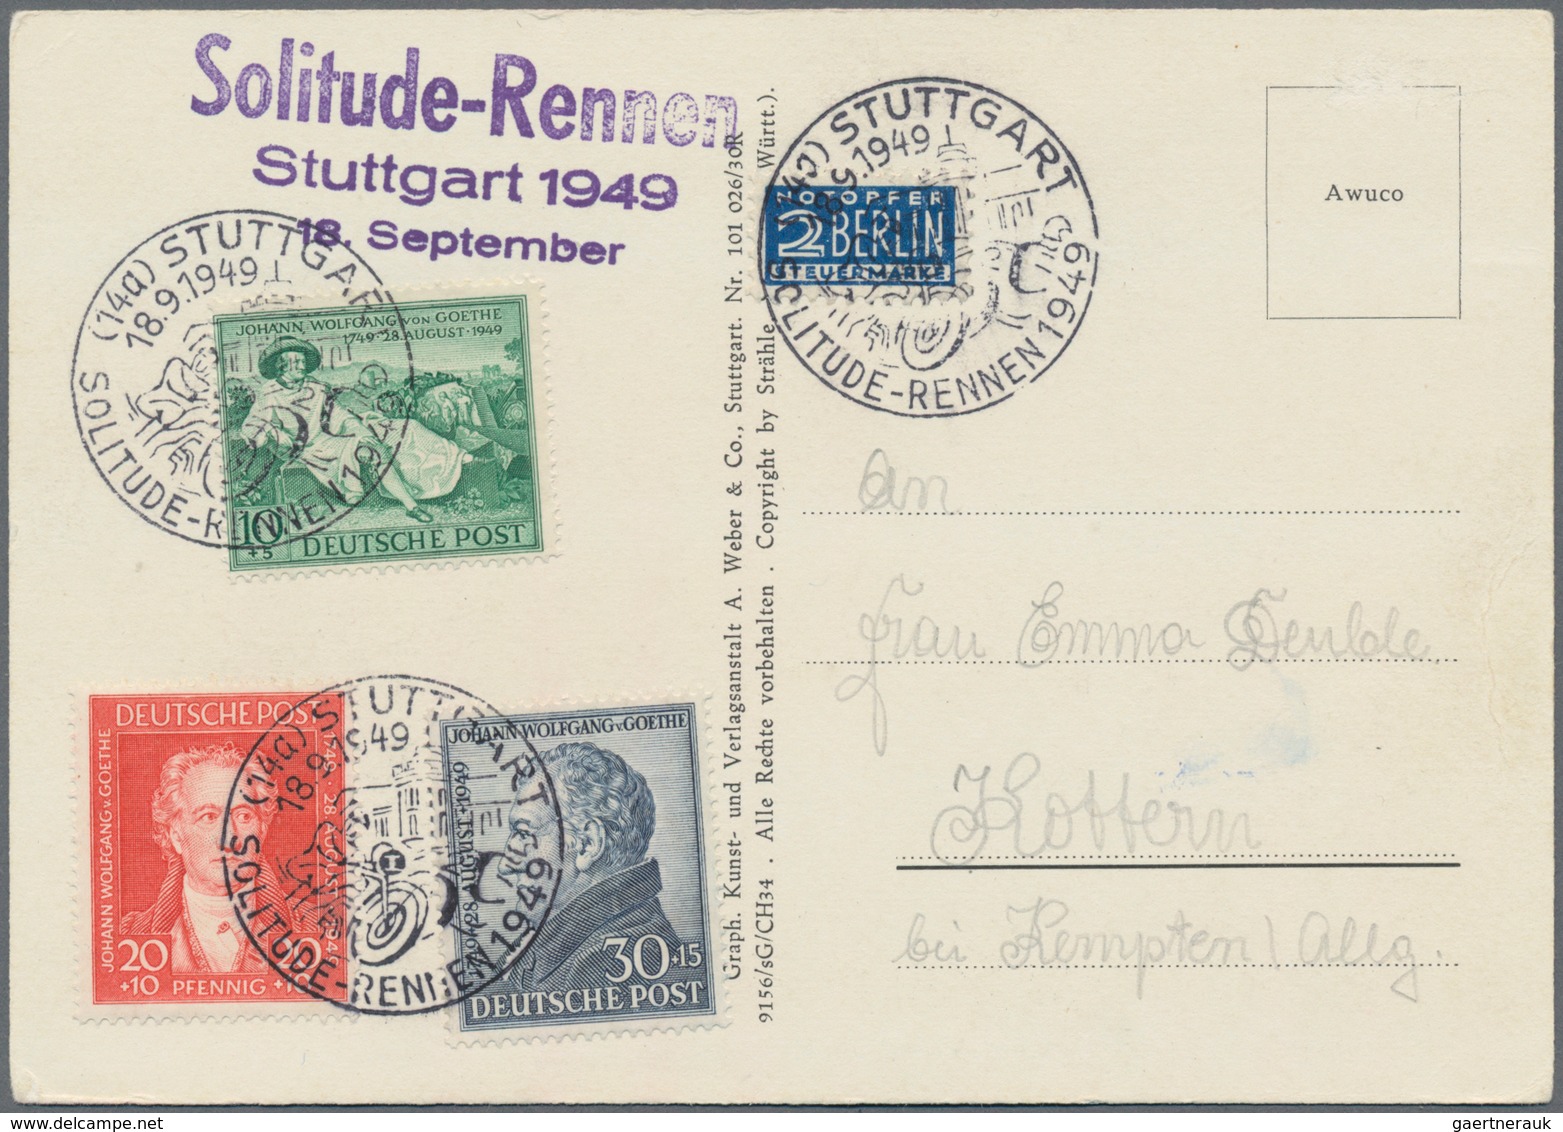 Heimat: Baden-Württemberg: 1890/2000, STUTTGART, umfassende Heimat-Sammlung mit ca. 550 Briefen und